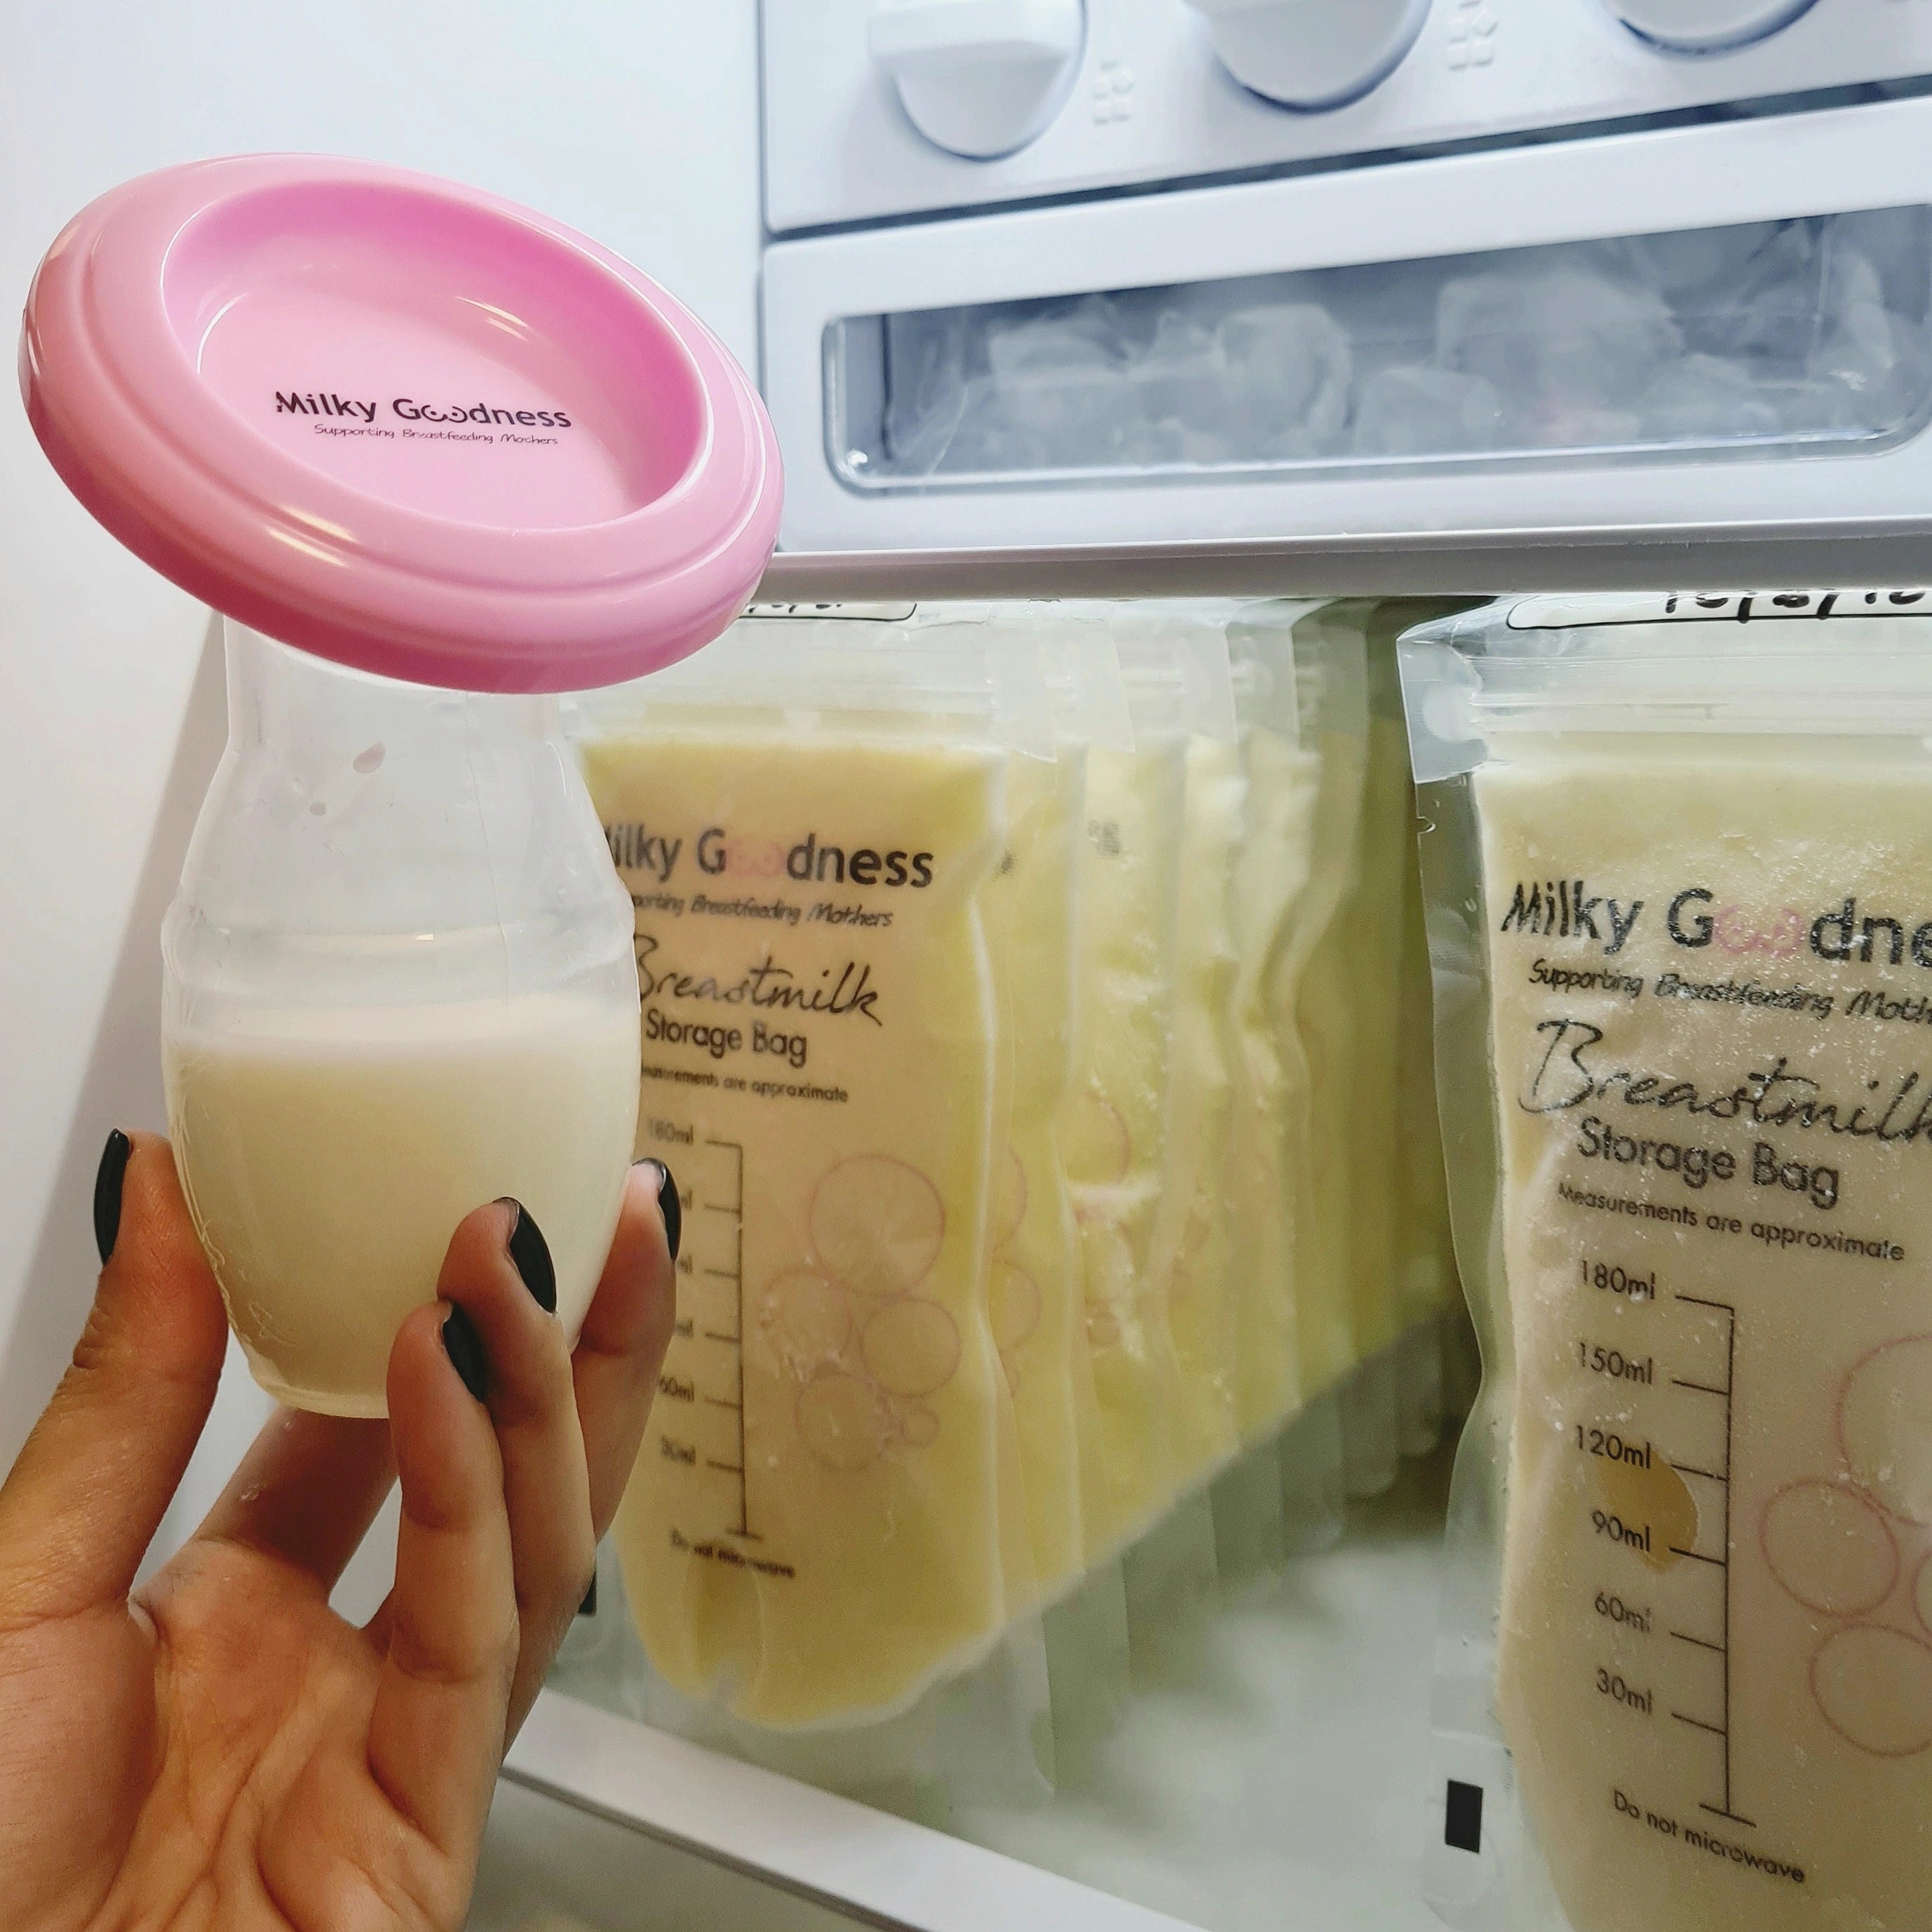 Breast Milk Storage Bags (25pk)